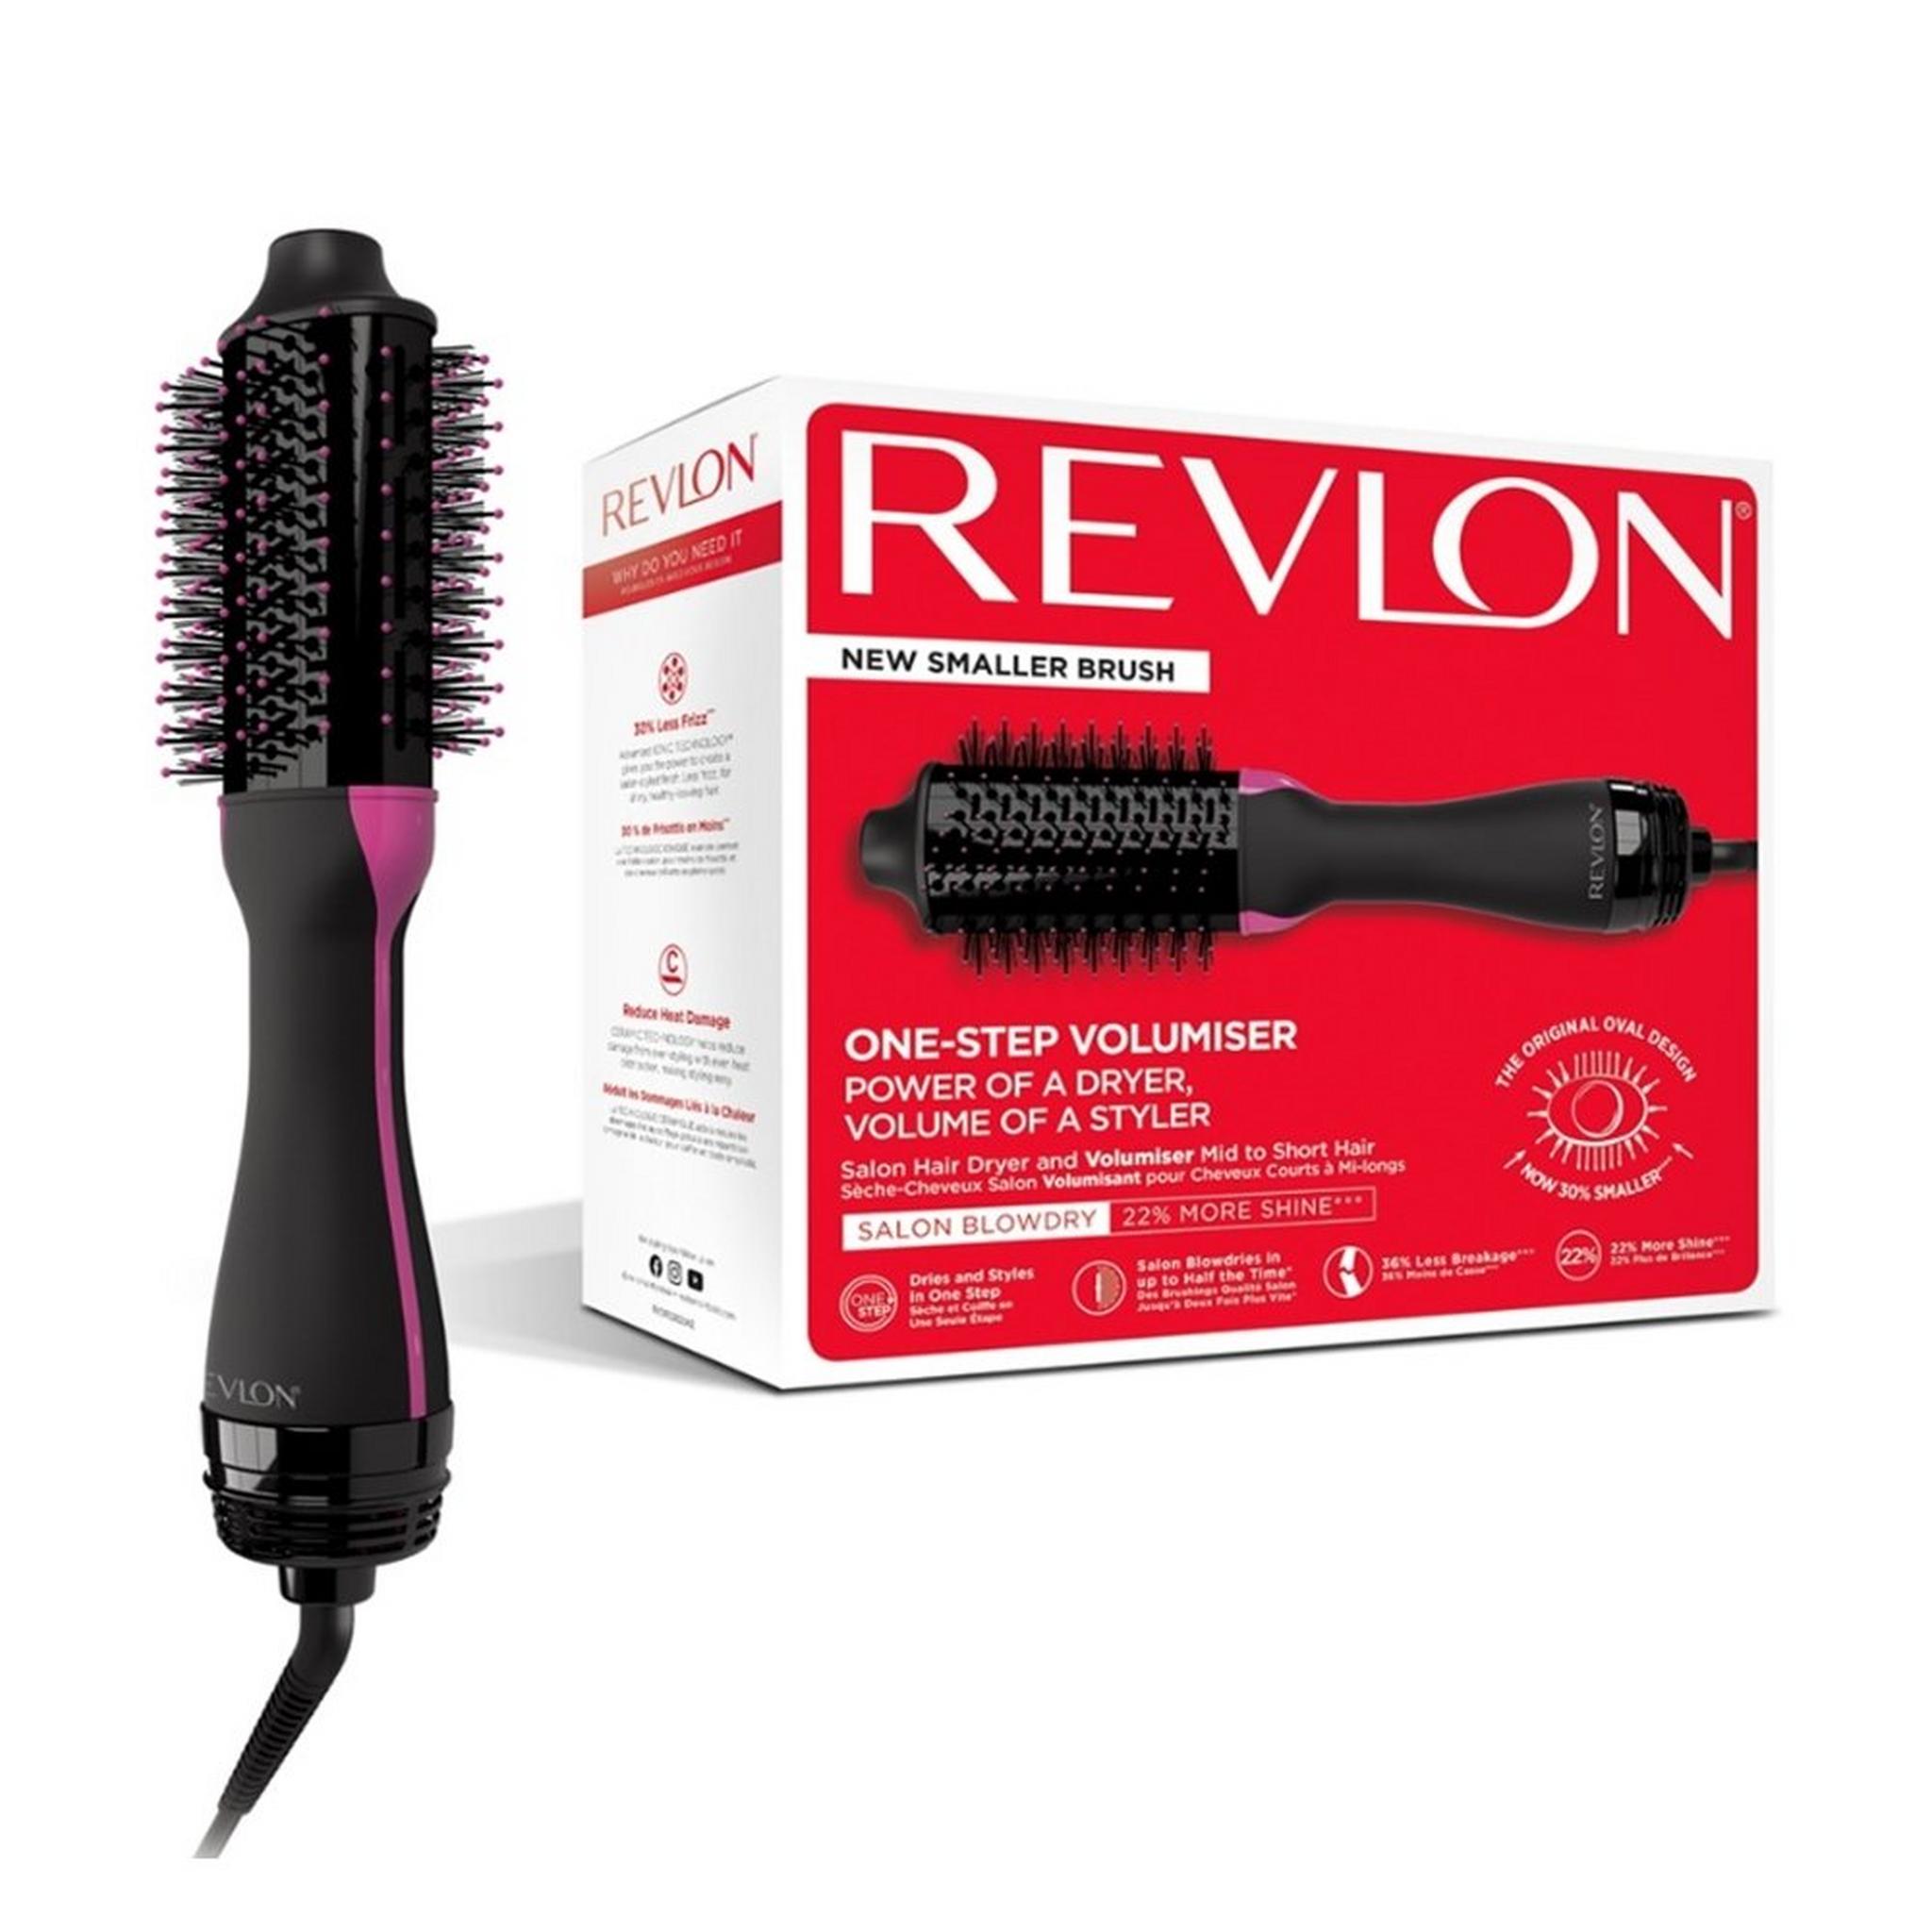 Revlon Dryer & Volumiser Brush, 1100W, 3 Heat Settings,RVDR5282ARB - Black